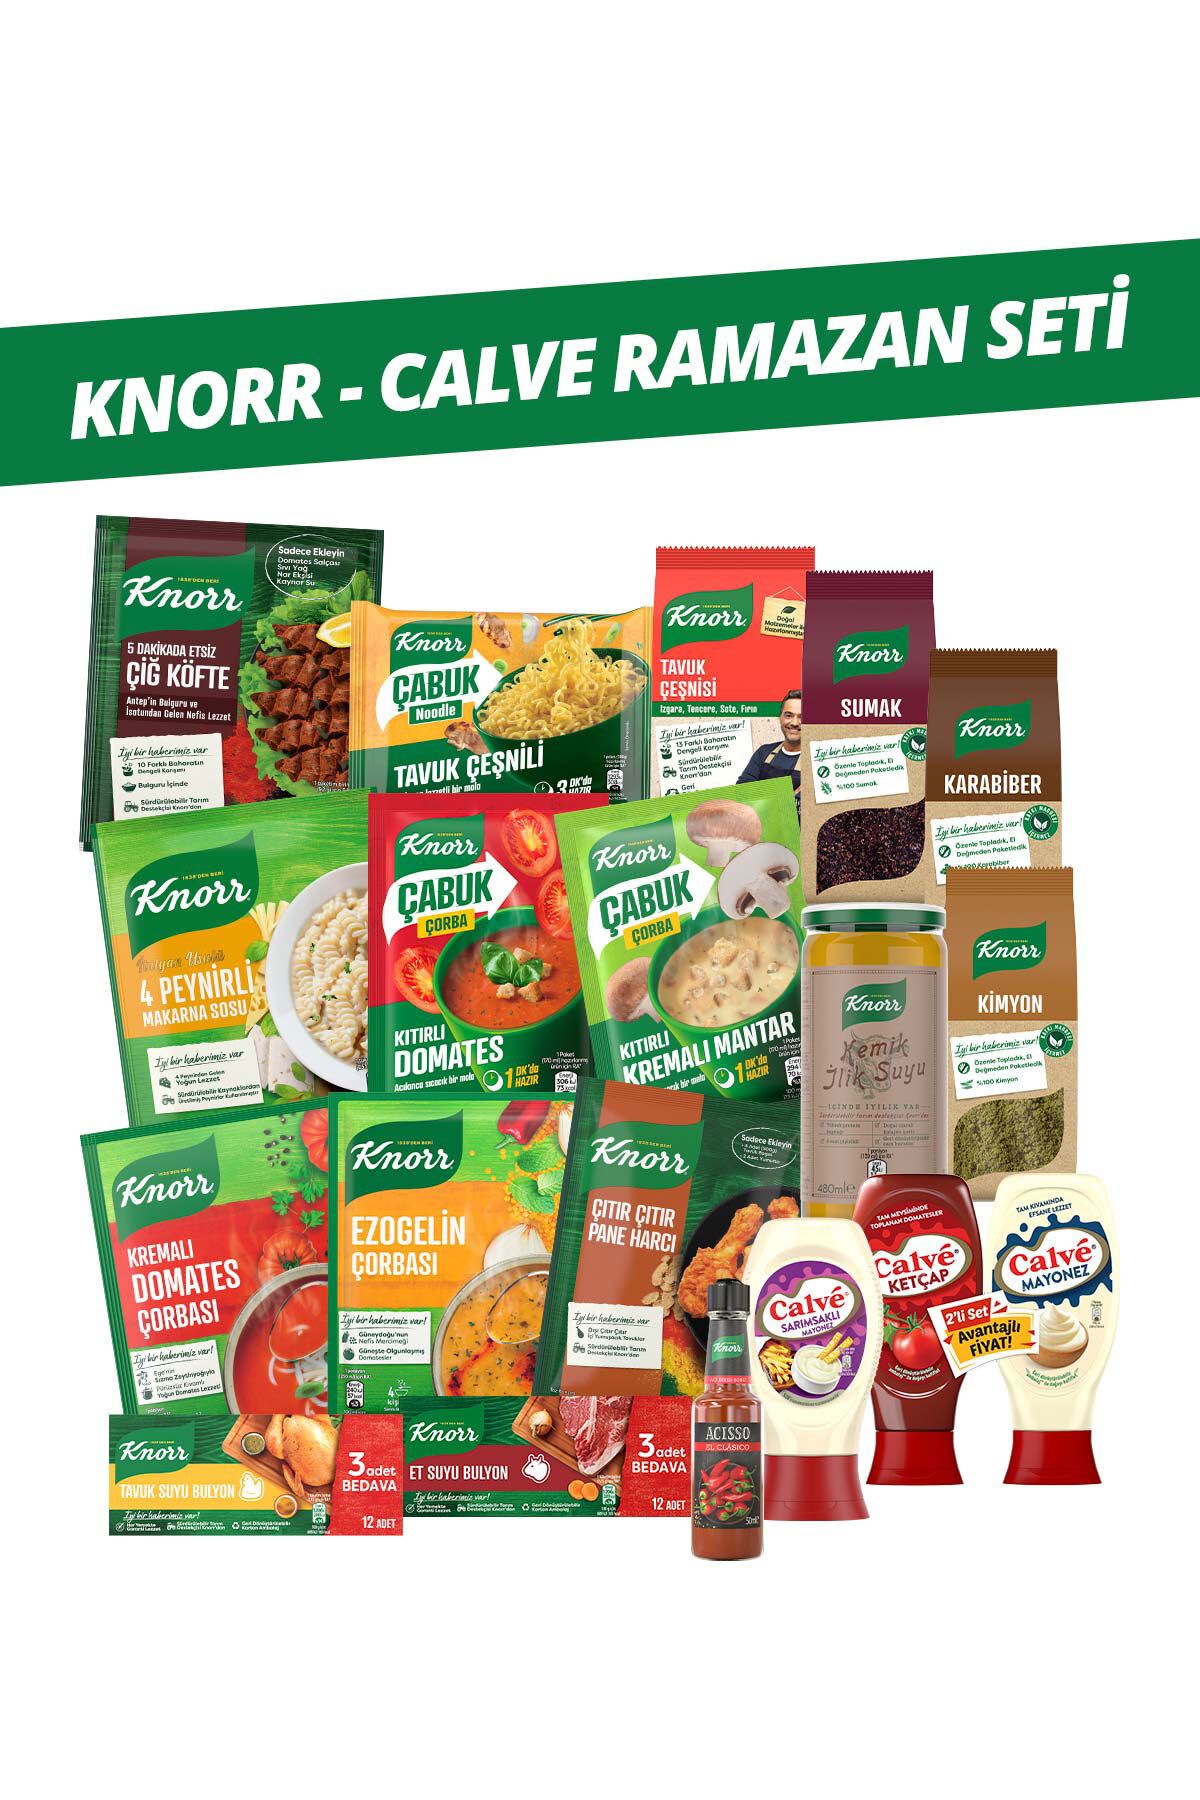 Knorr & Calve Ramazan Paketi Harç, Sos, Bulyon, Çorba, Noodle 18 Cm Tencere Hediyeli